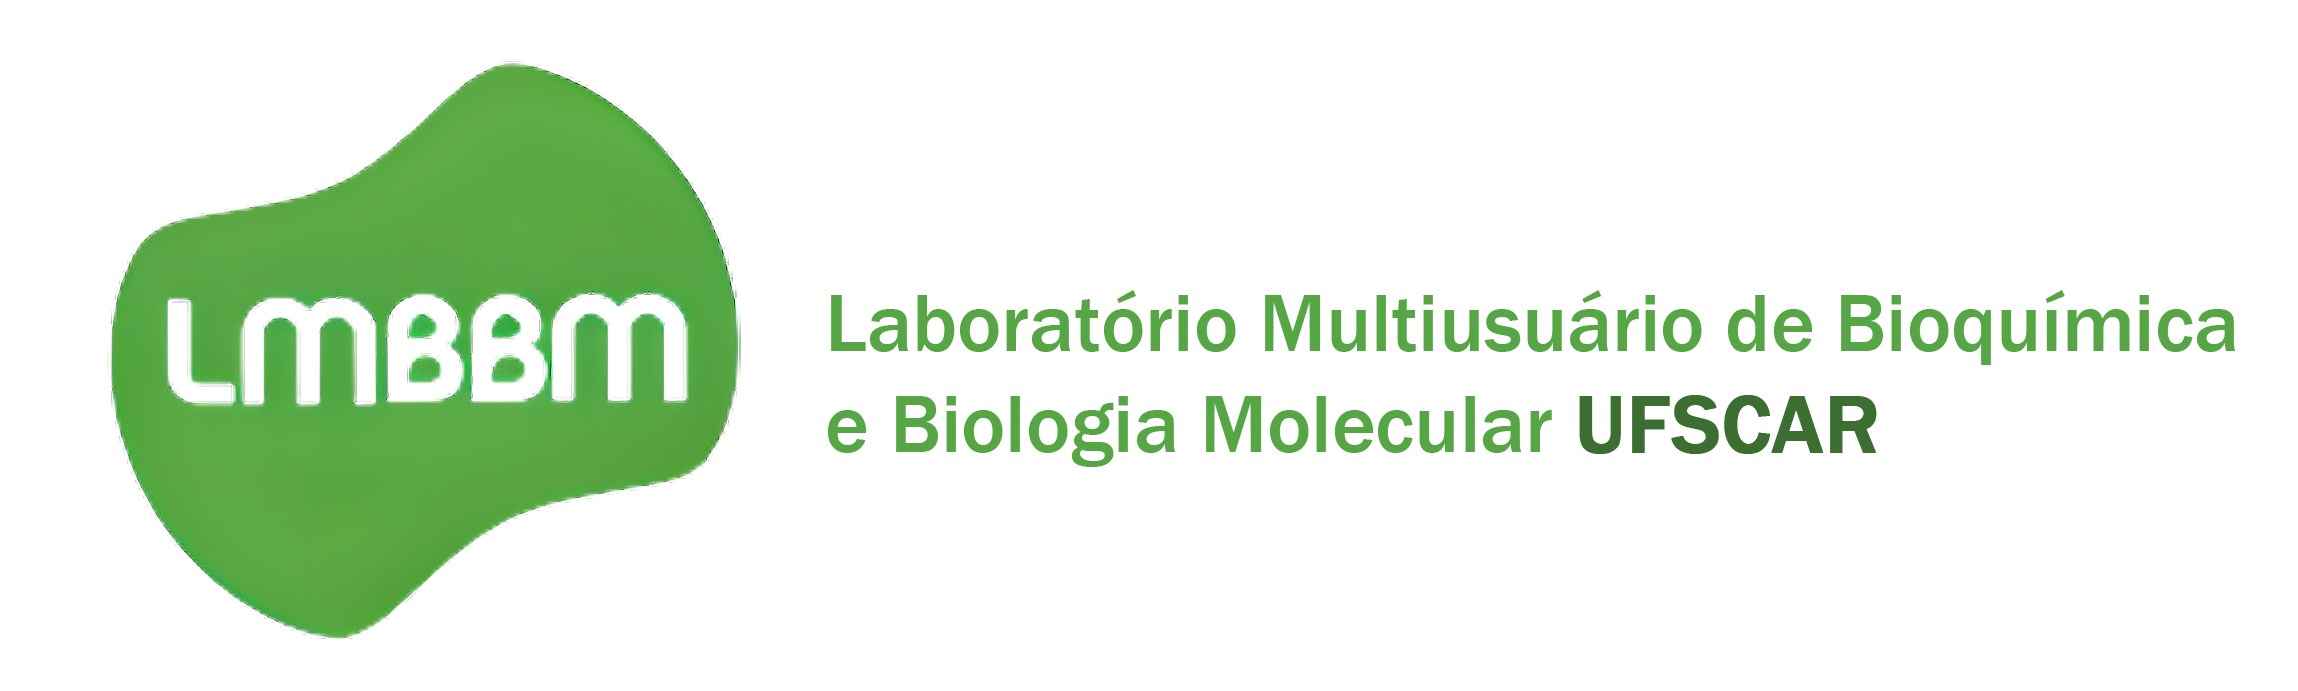 Laboratório de Bioquímica e Biologia Molecular